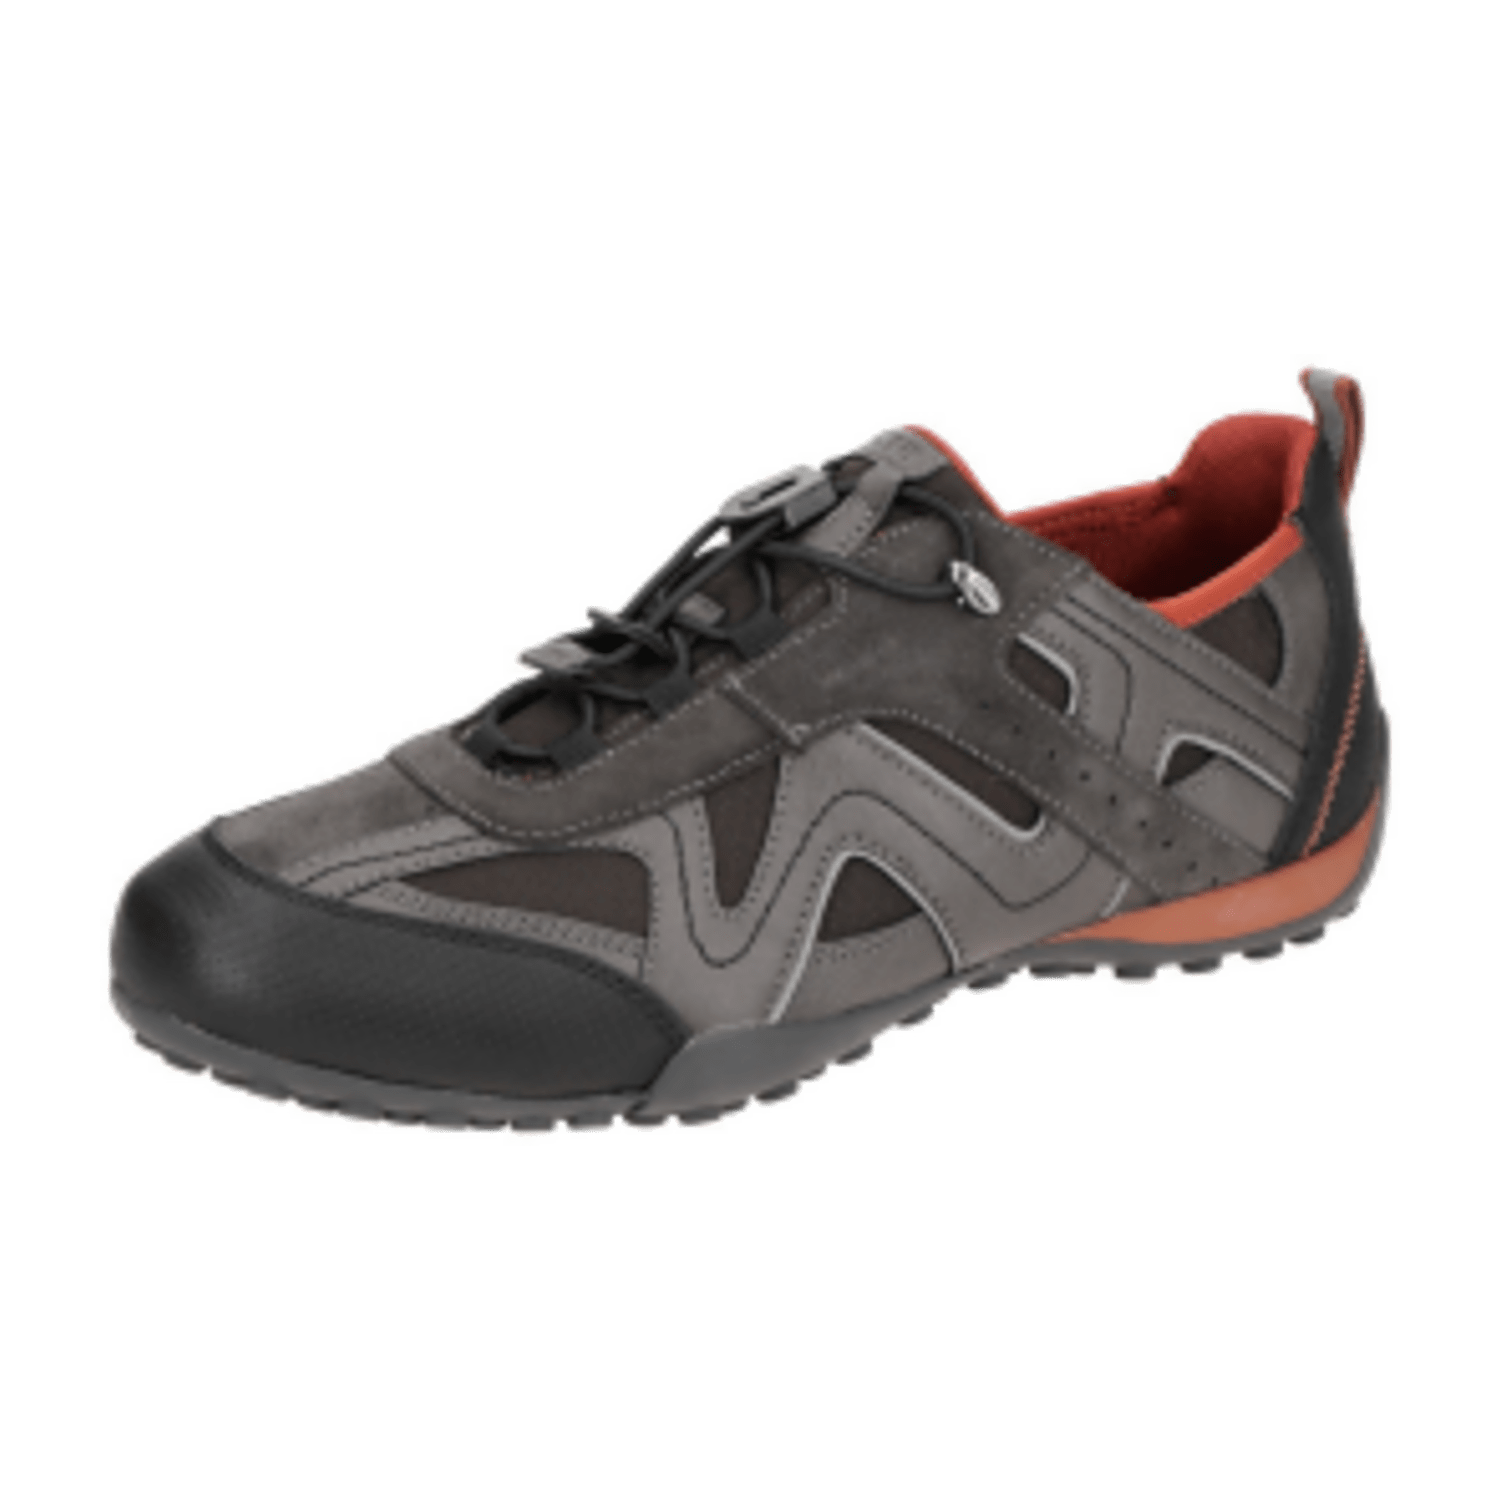 Geox Snake Sneaker Schuhe braun grau mud U2507B